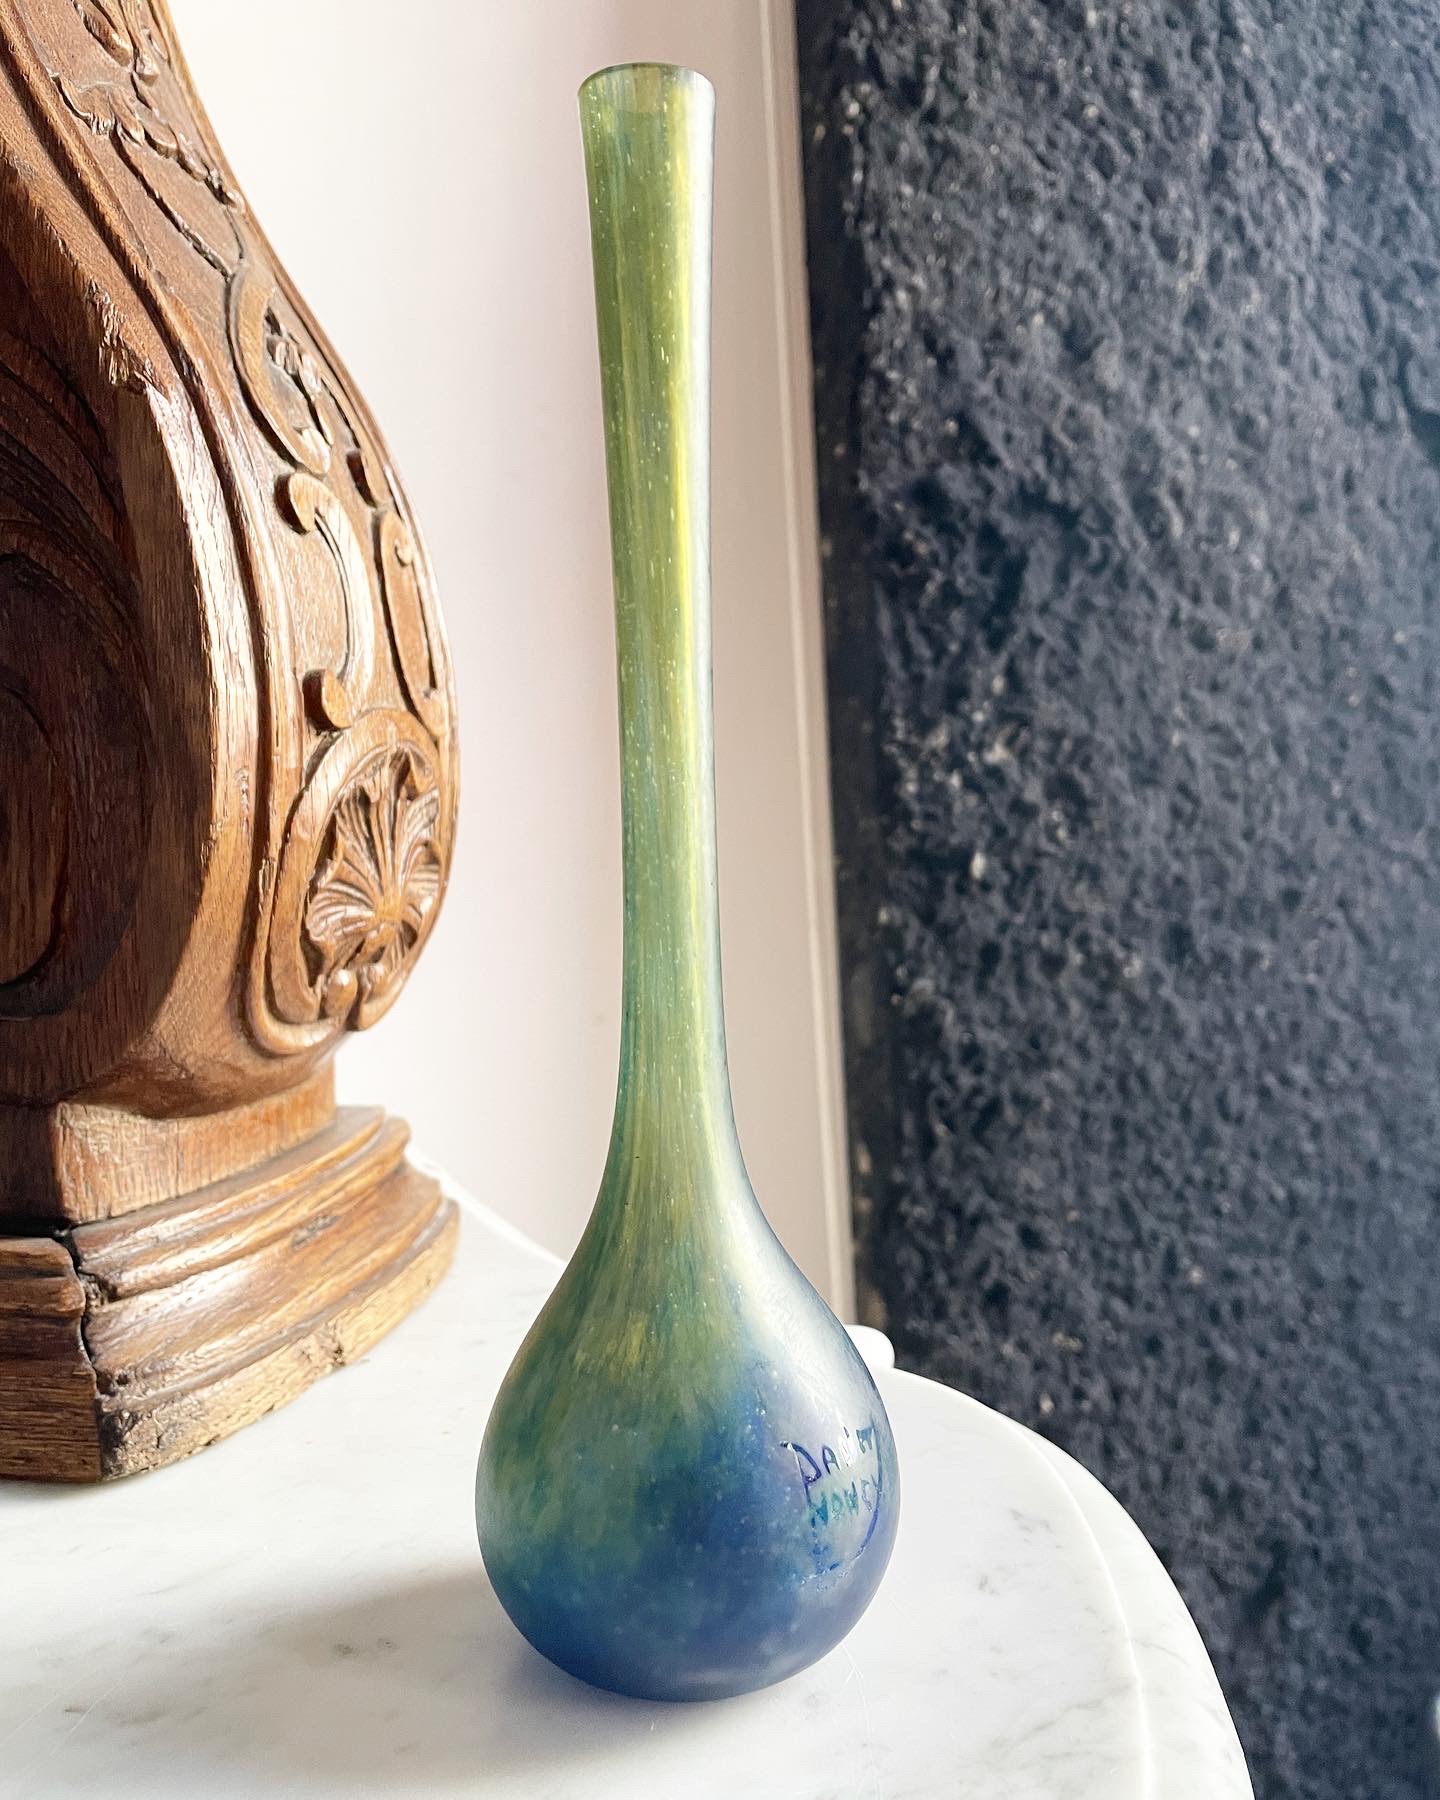 vase-soliflore-daum-nancy-bleu-vert-collection-privée-investissement-aurore-morisse-antiquaire-décoration-antiquité-objet-ancien-liège-paris-affaire-conclue-marchad-art-antiques3